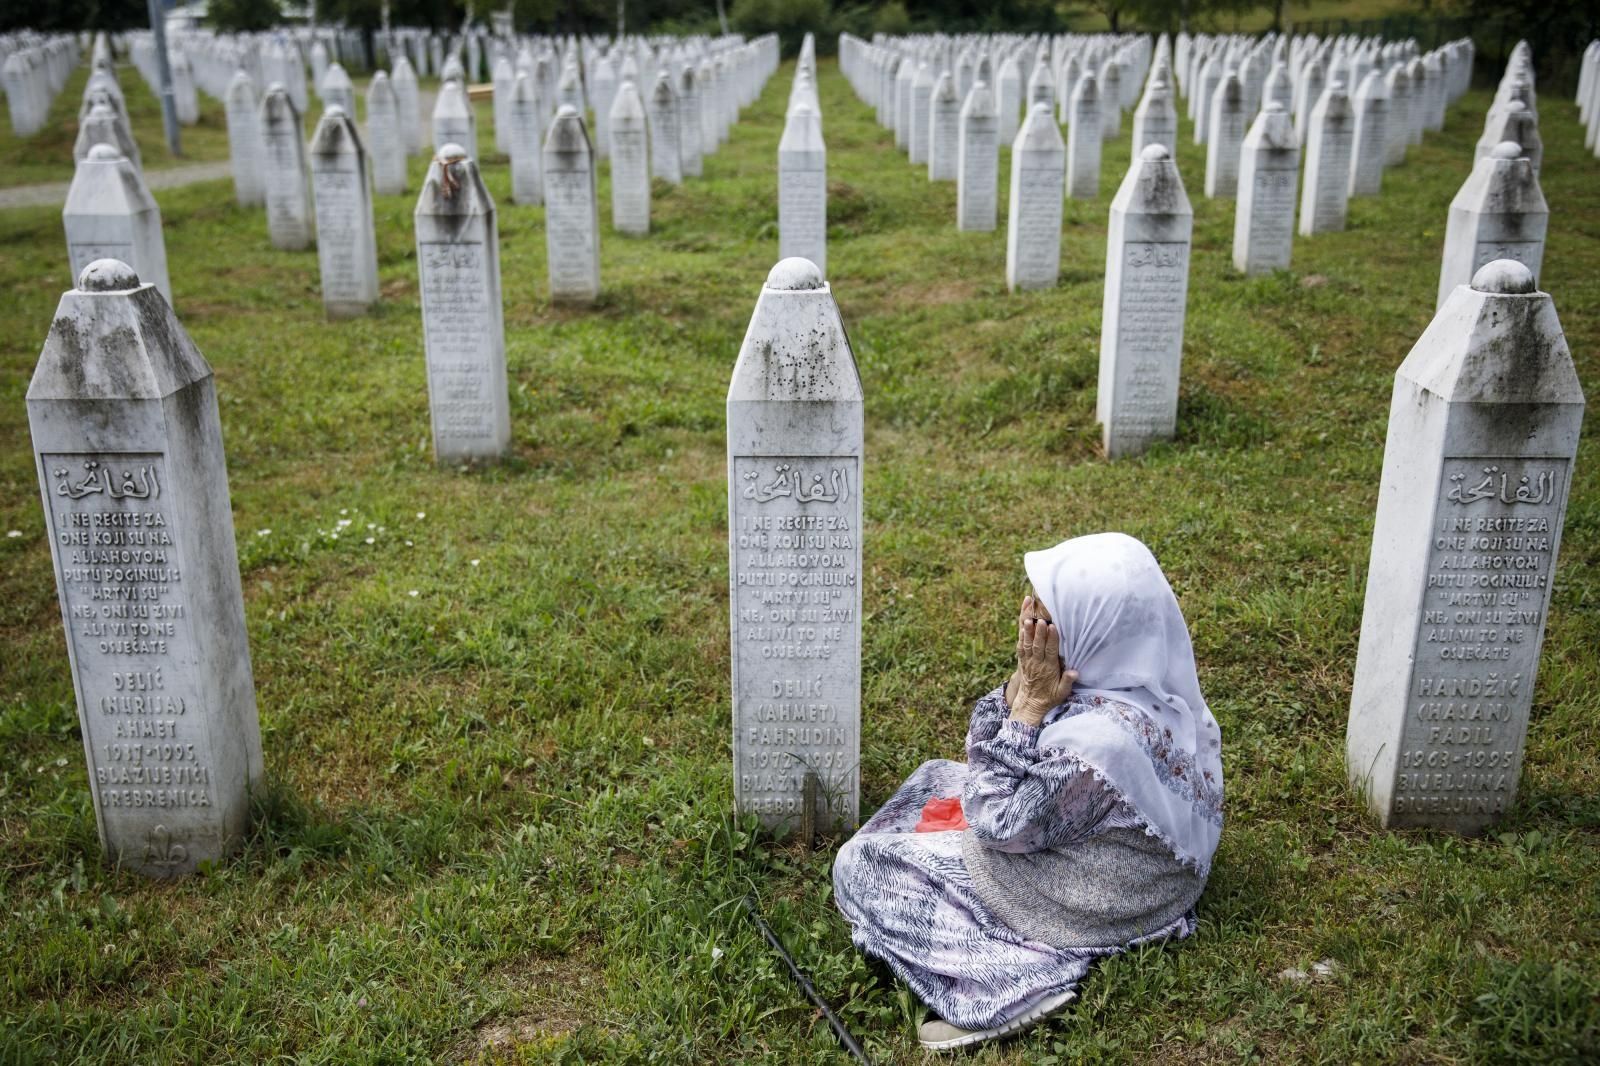 10.07.2021., Potocari, Bosna i Hercegovina - Obitelji ubijenih u genocidu okupljaju se u Memorijalnom centru Srebrenica - Potocari gdje se molitvom prisjecaju svojih najmilijih. U nedelju 11.07., ovdje ce biti ukopano jos 19 zrtava genocida u Srebrenici.
Photo: Armin Durgut/PIXSELL